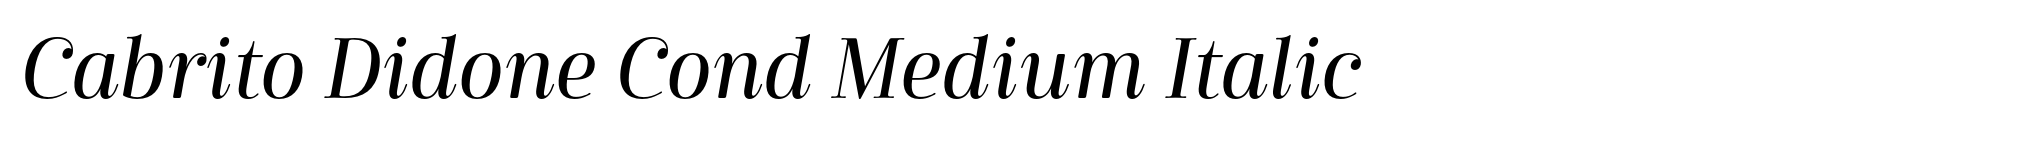 Cabrito Didone Cond Medium Italic image